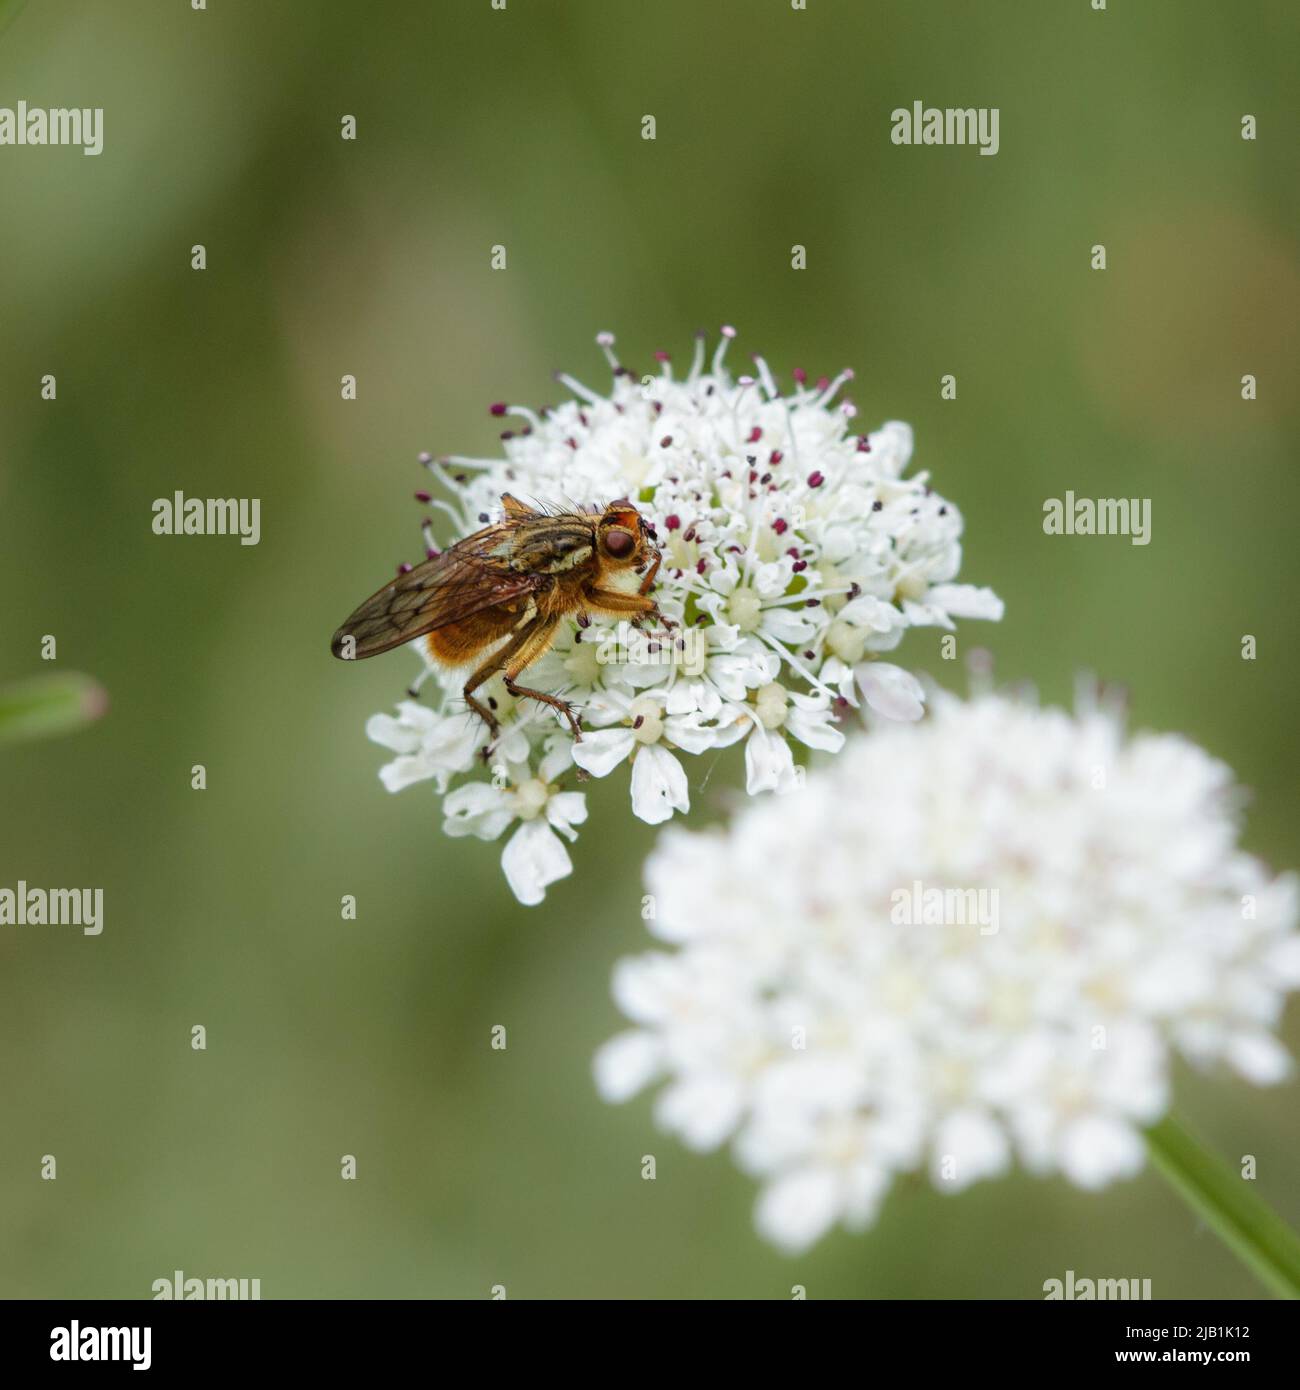 Schwebfliege (Syrphidae) besiedelt auf Pignut (Conopodium majus) Dolde. Bild in dominanten Grüntönen. Stockfoto